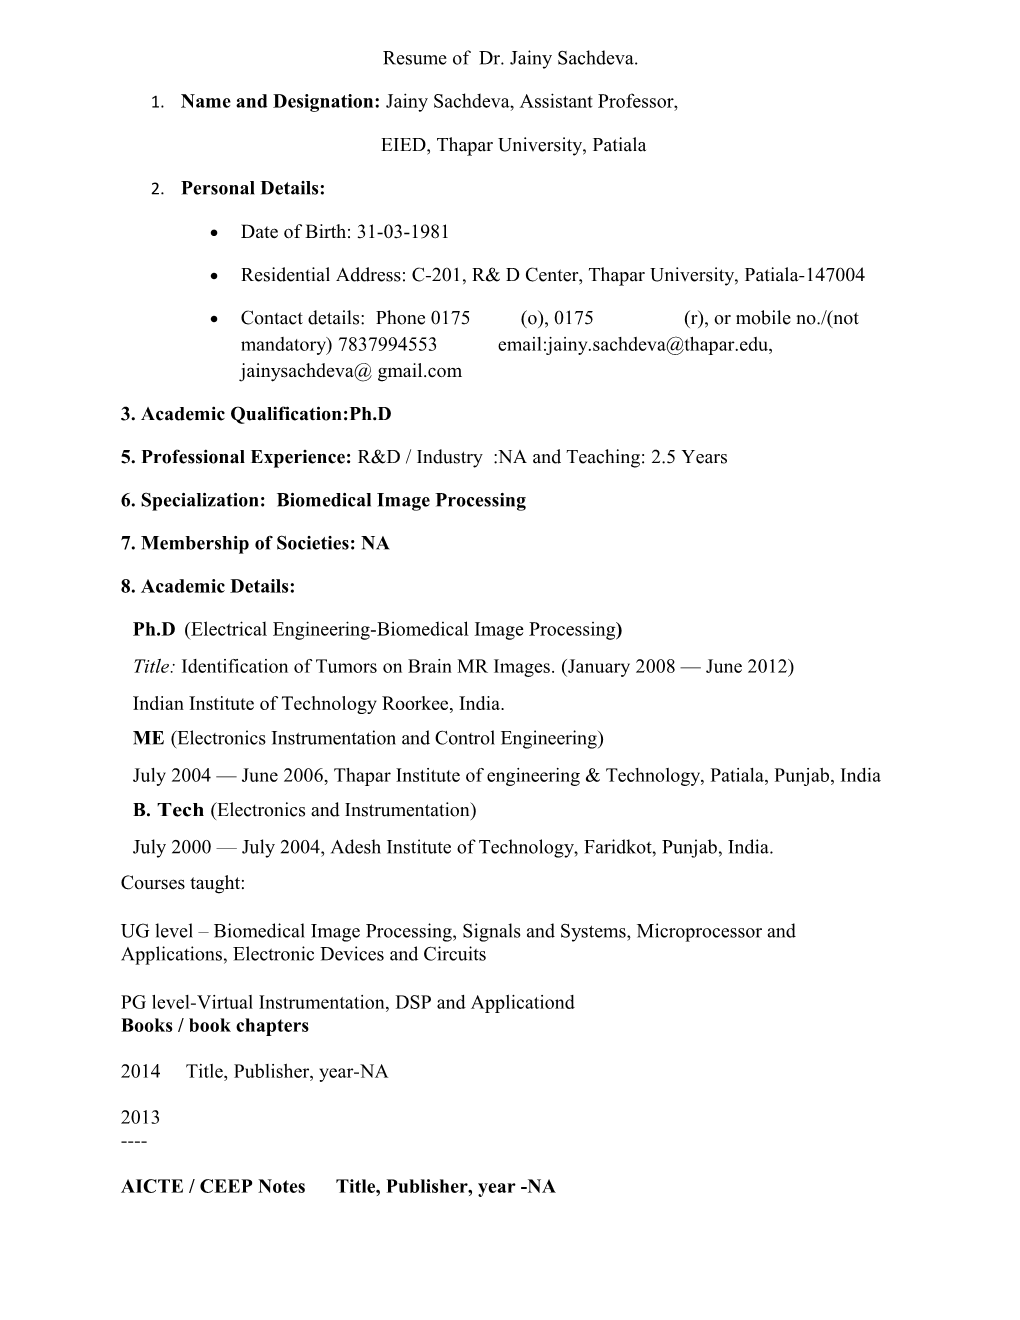 Resume of Dr. Jainysachdeva